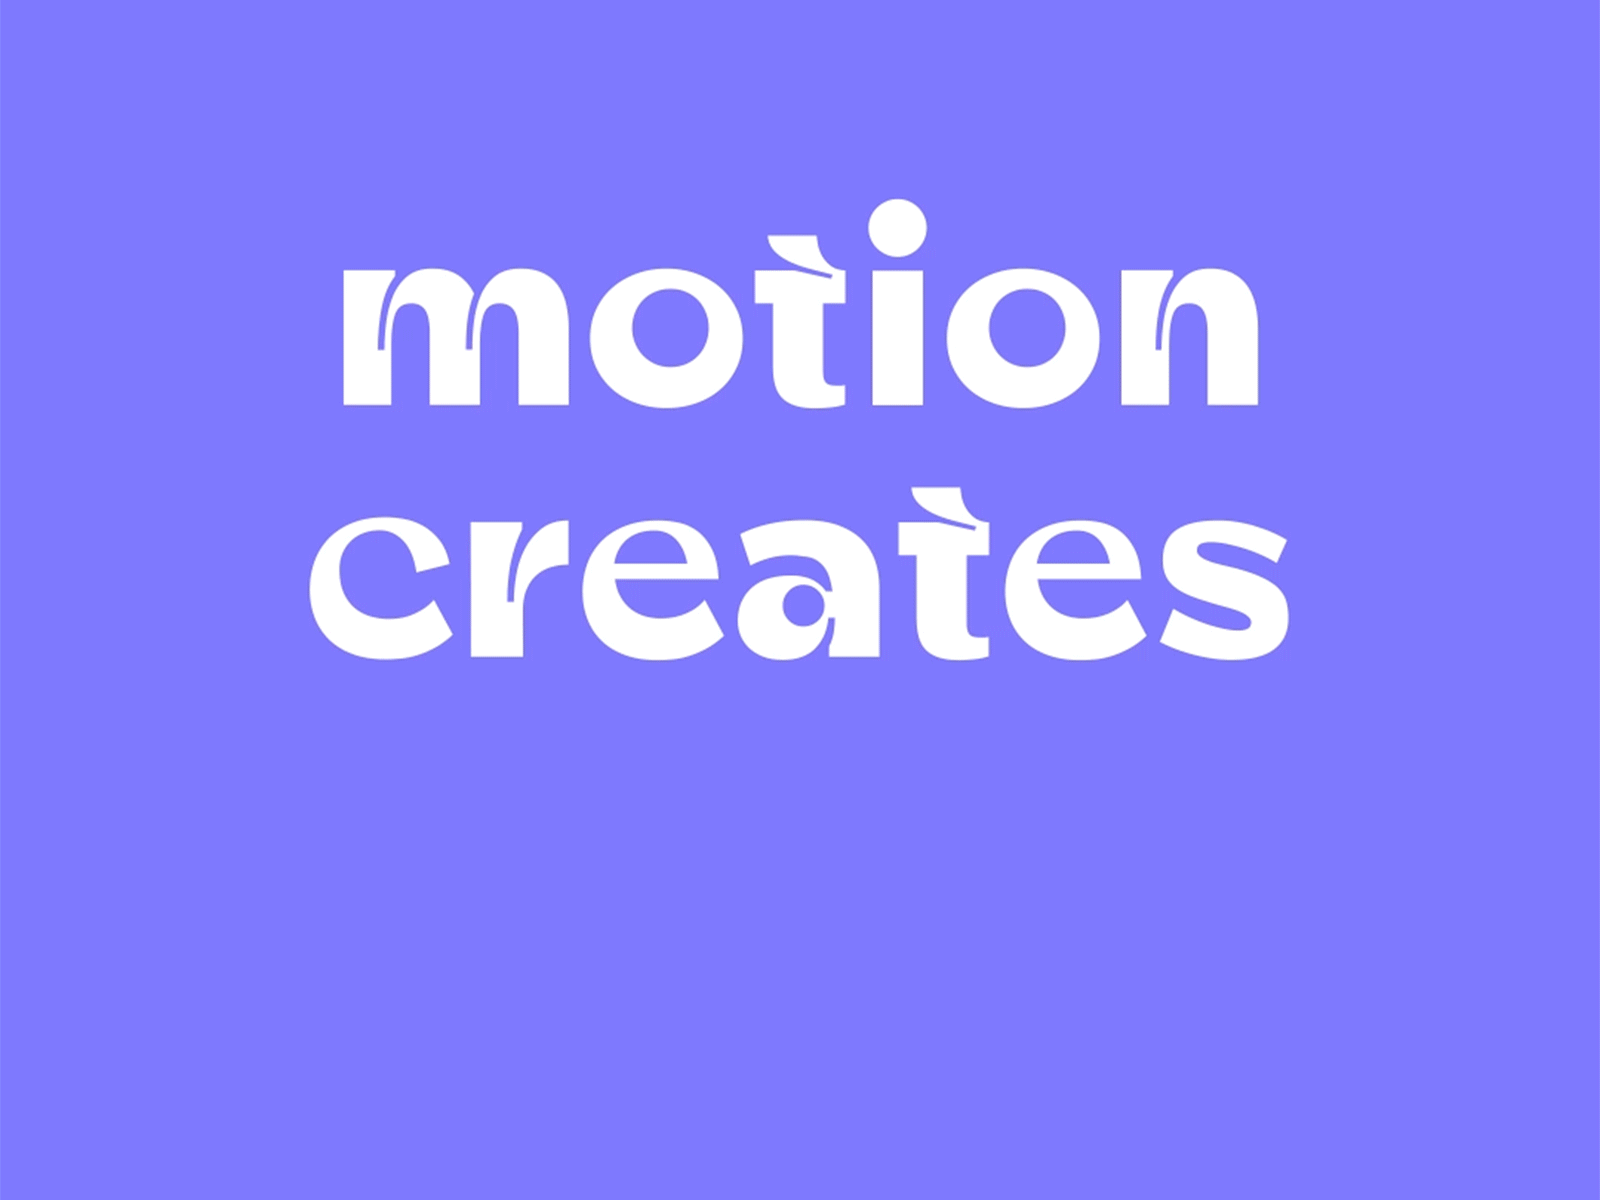 Motion creates emotion☄️